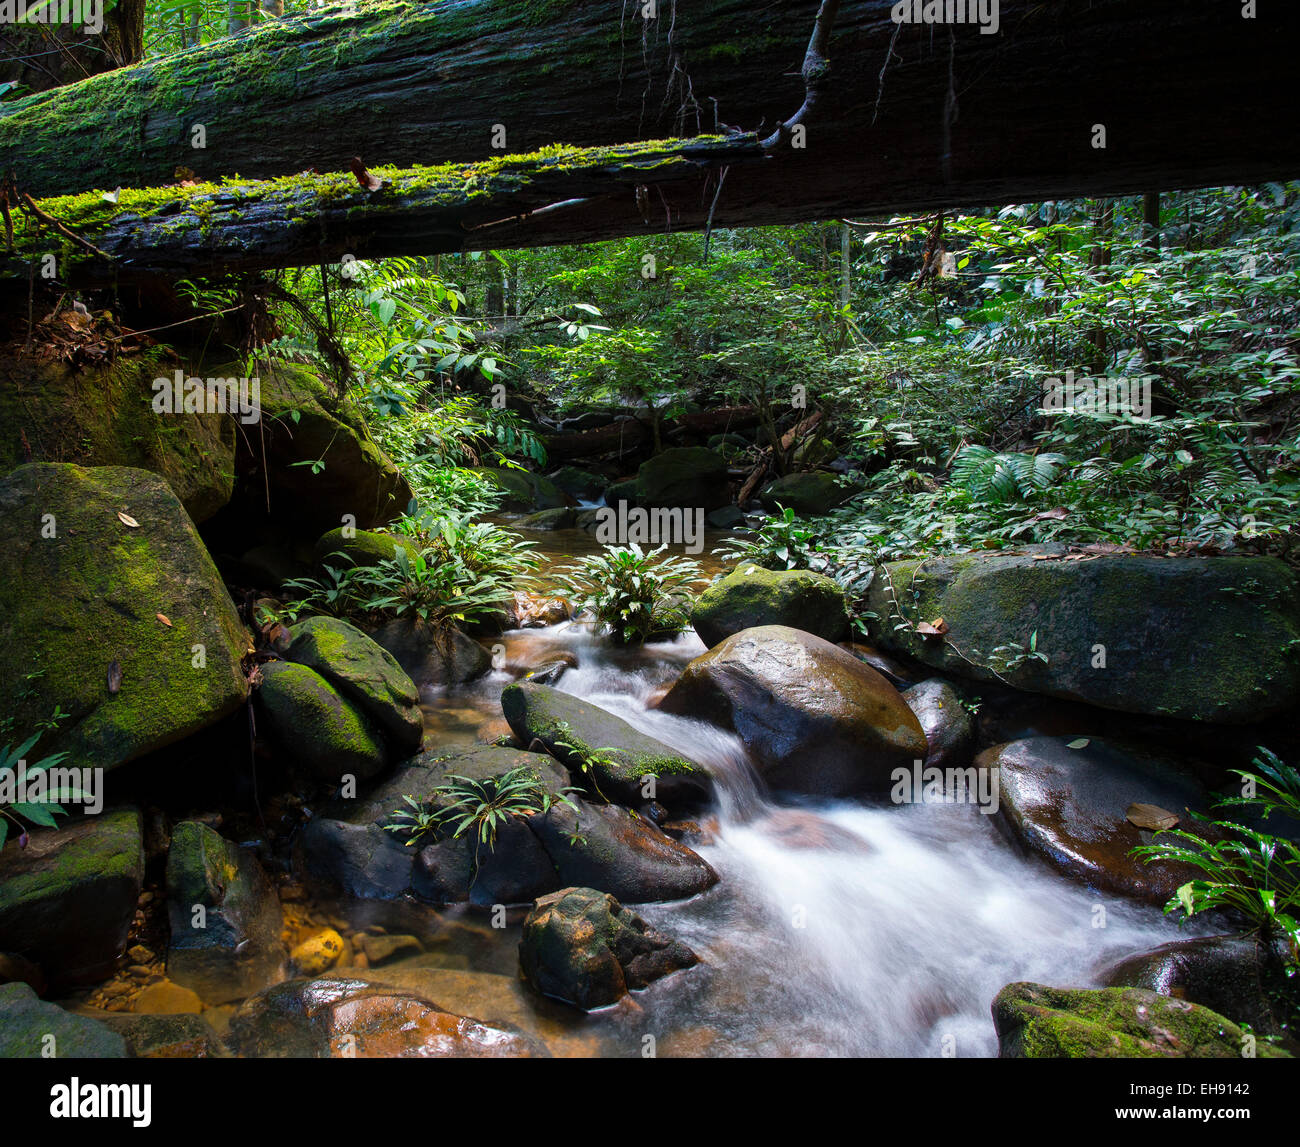 Ruisseau coule à travers la forêt tropicale luxuriante, Kubah National Park, Sarawak, Malaisie Banque D'Images